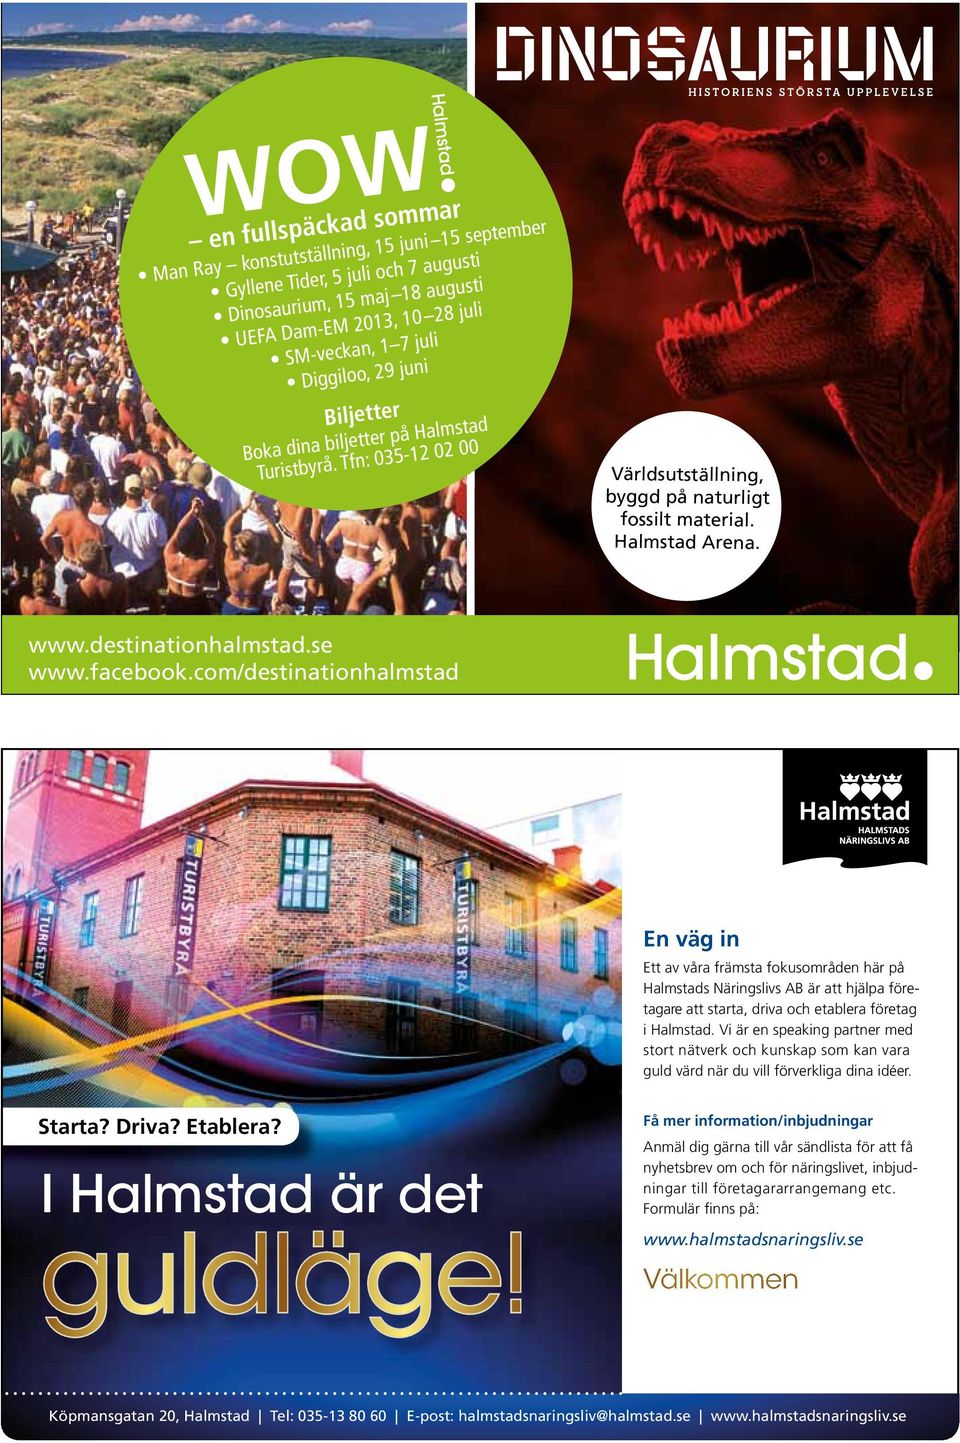 facebook.com/destinationhalmstad En väg in Ett av våra främsta fokusområden här på Halmstads Näringslivs AB är att hjälpa företagare att starta, driva och etablera företag i Halmstad.